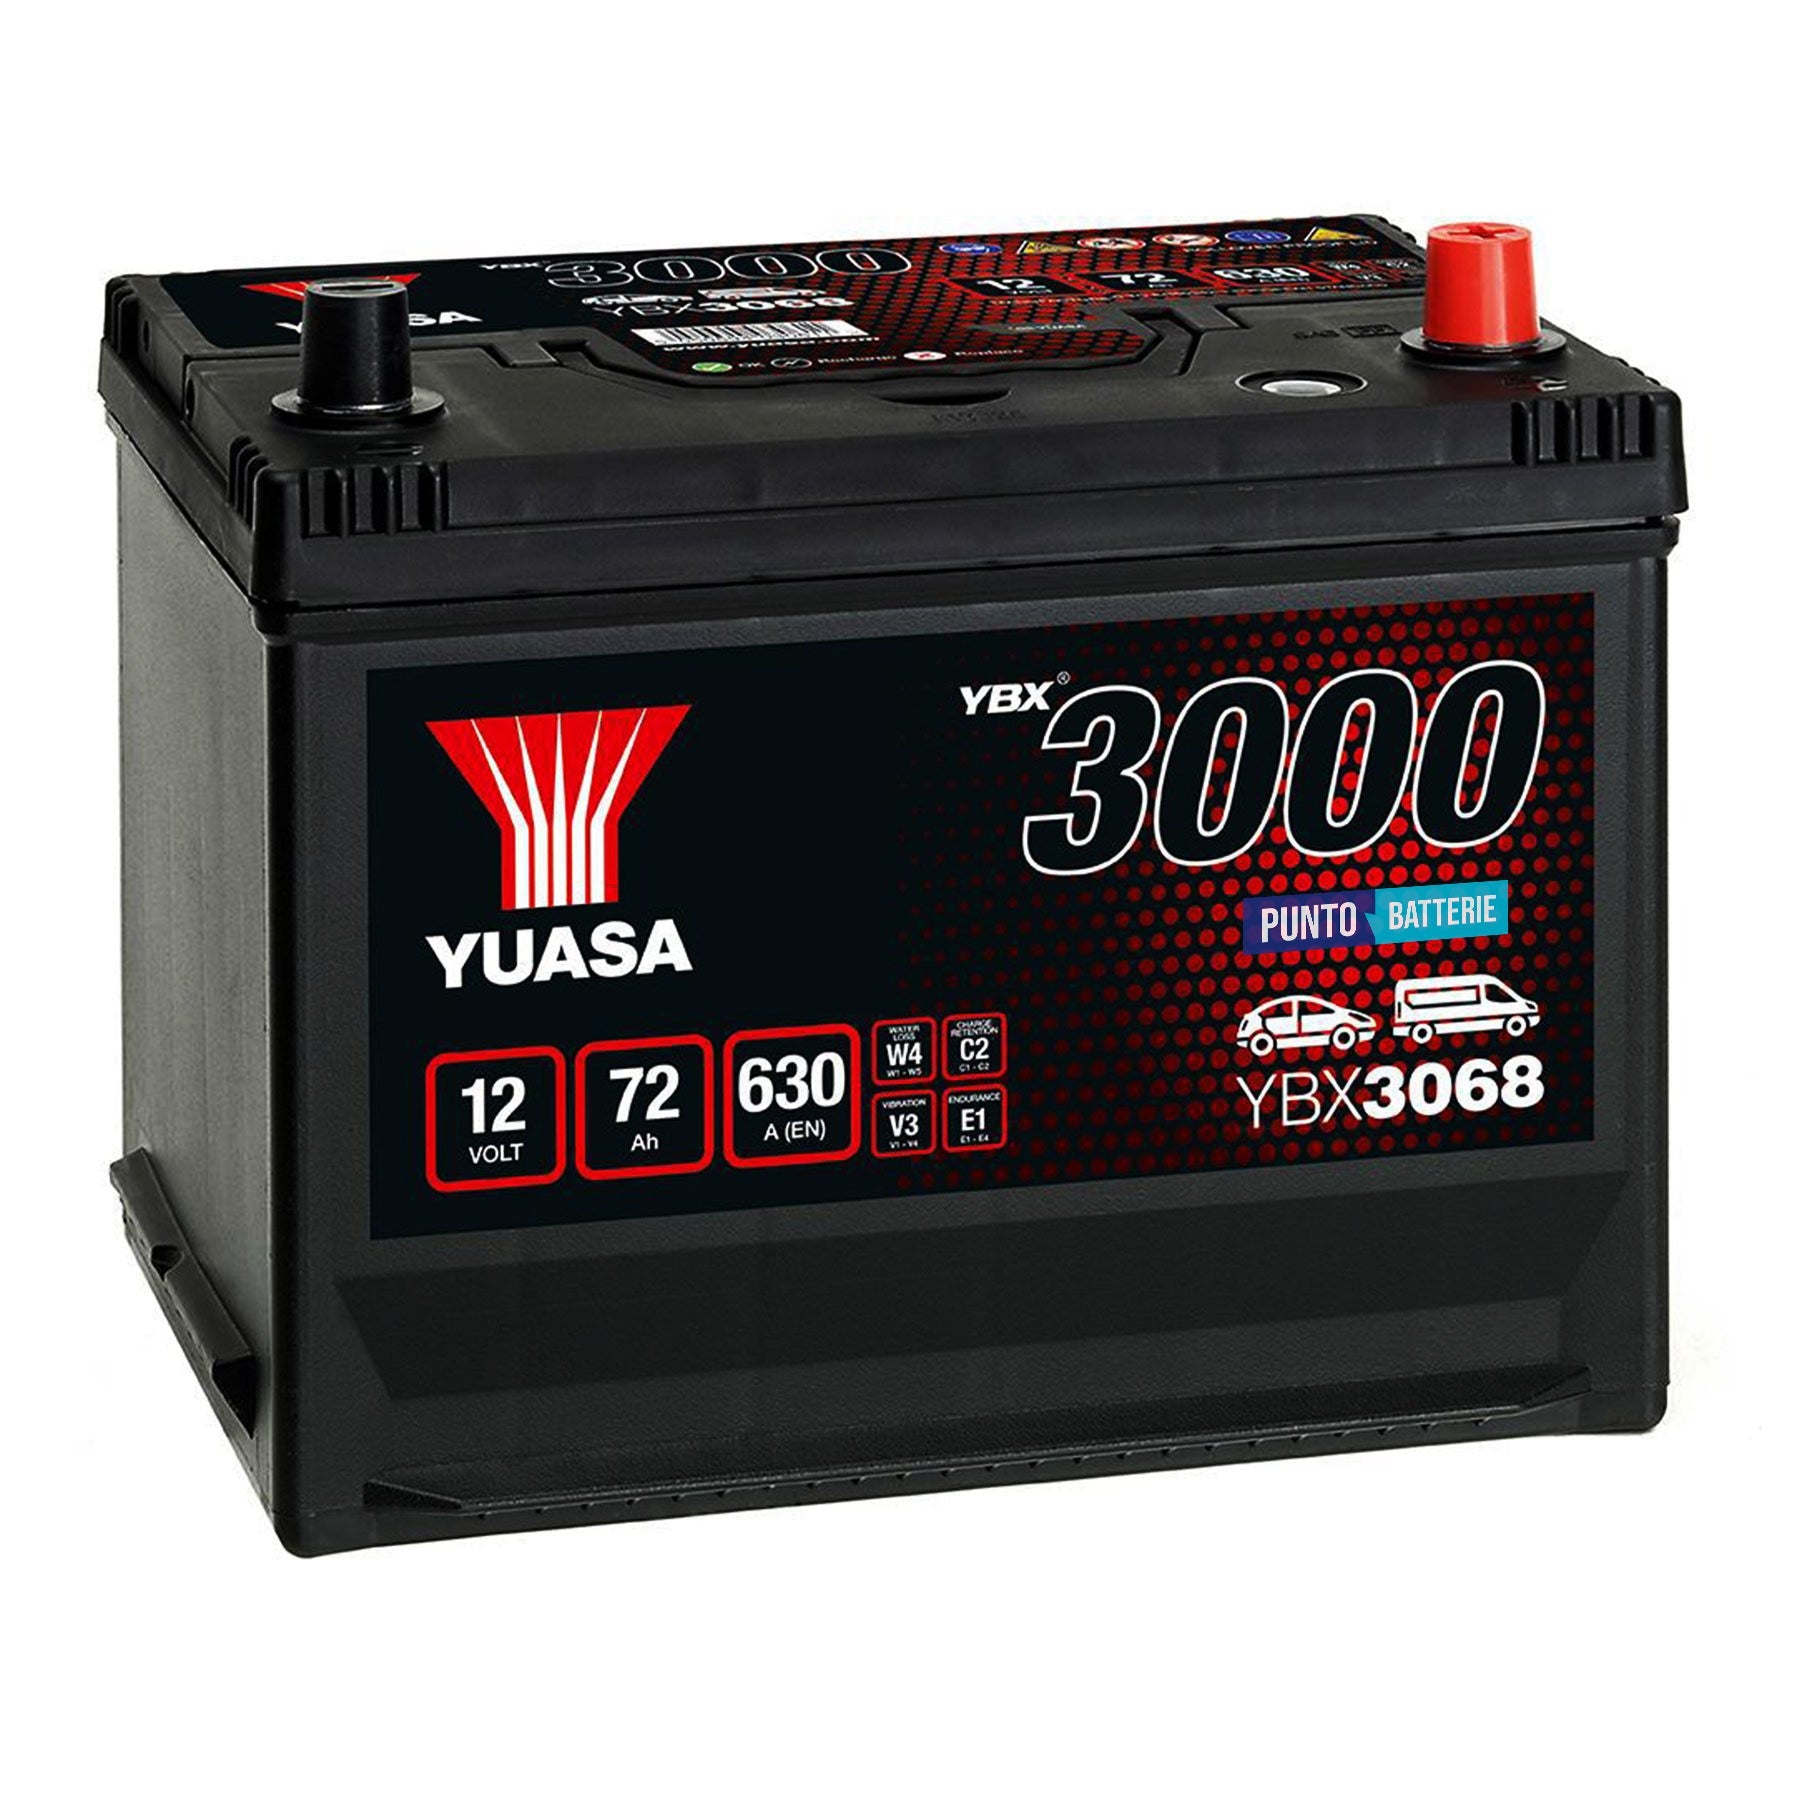 Batteria originale Yuasa YBX3000 YBX3068, dimensioni 269 x 174 x 223, polo positivo a destra, 12 volt, 72 amperora, 630 ampere. Batteria per auto e veicoli leggeri.